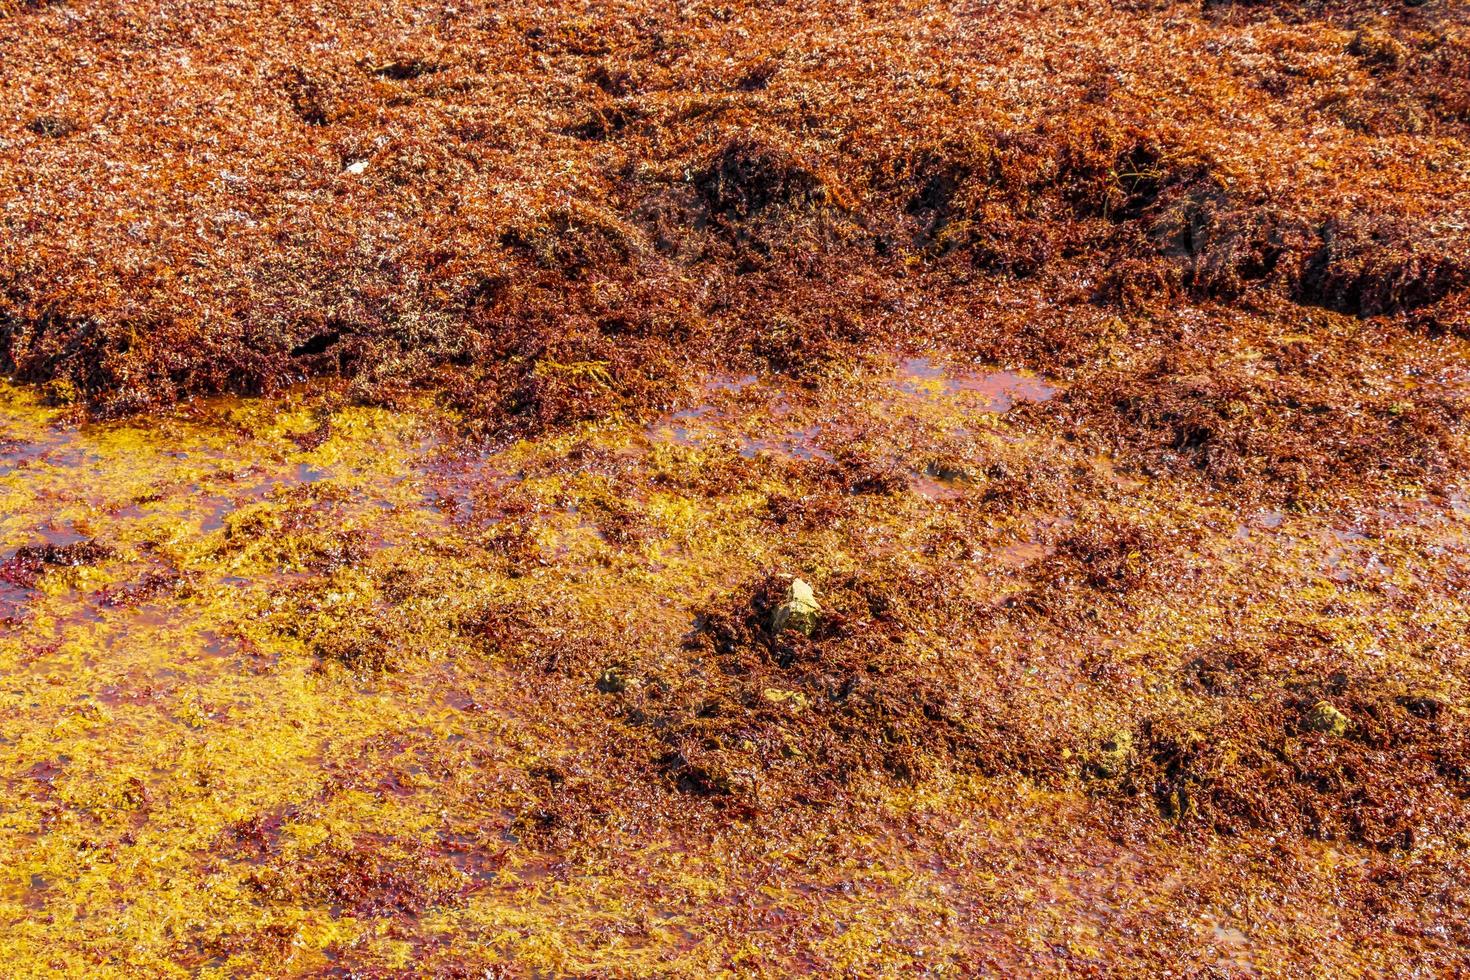 Textura de sargazo de algas rojas en la playa de playa del carmen, méxico. foto